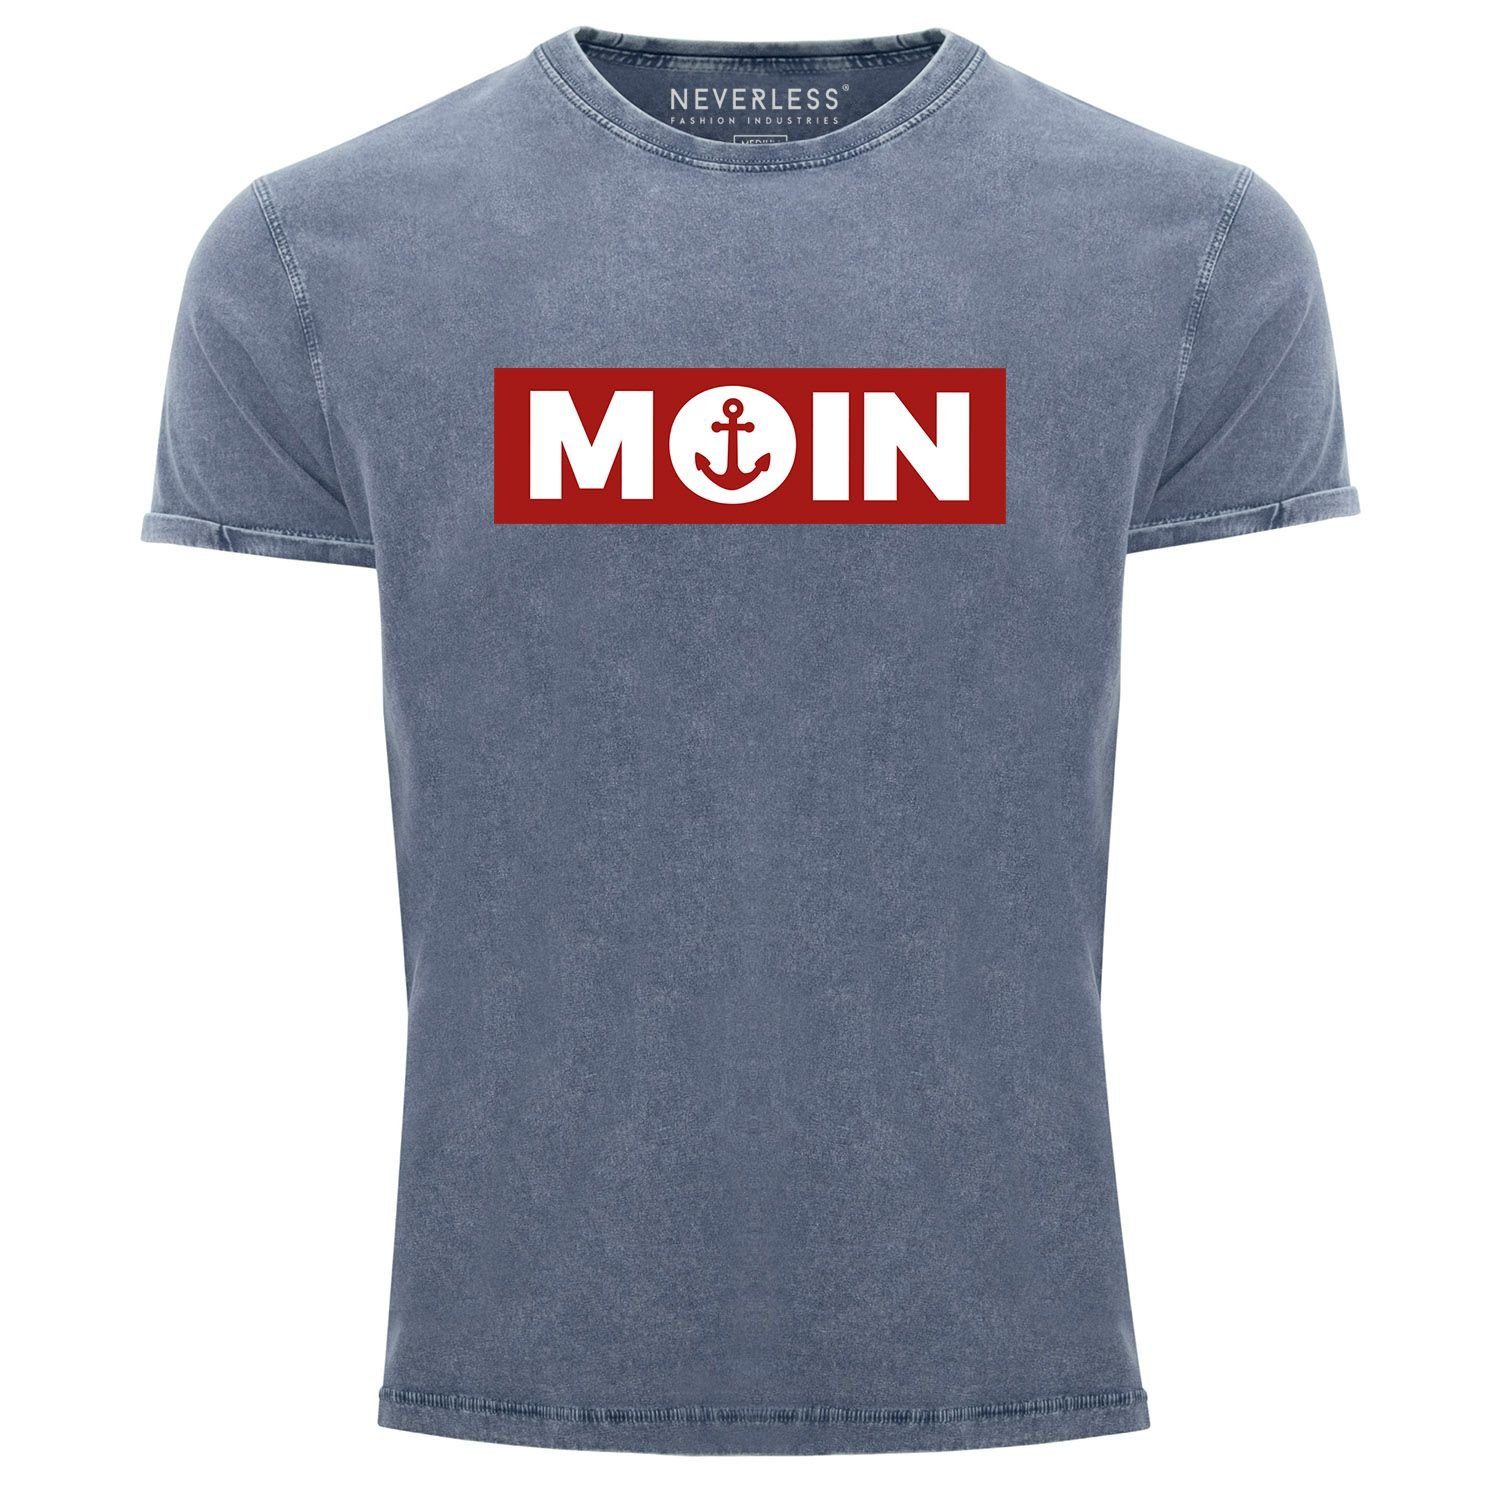 Neverless Print-Shirt Herren Vintage Shirt Moin norddeutsch Morgen Anker Printshirt T-Shirt Aufdruck Used Look Slim Fit Neverless® mit Print blau